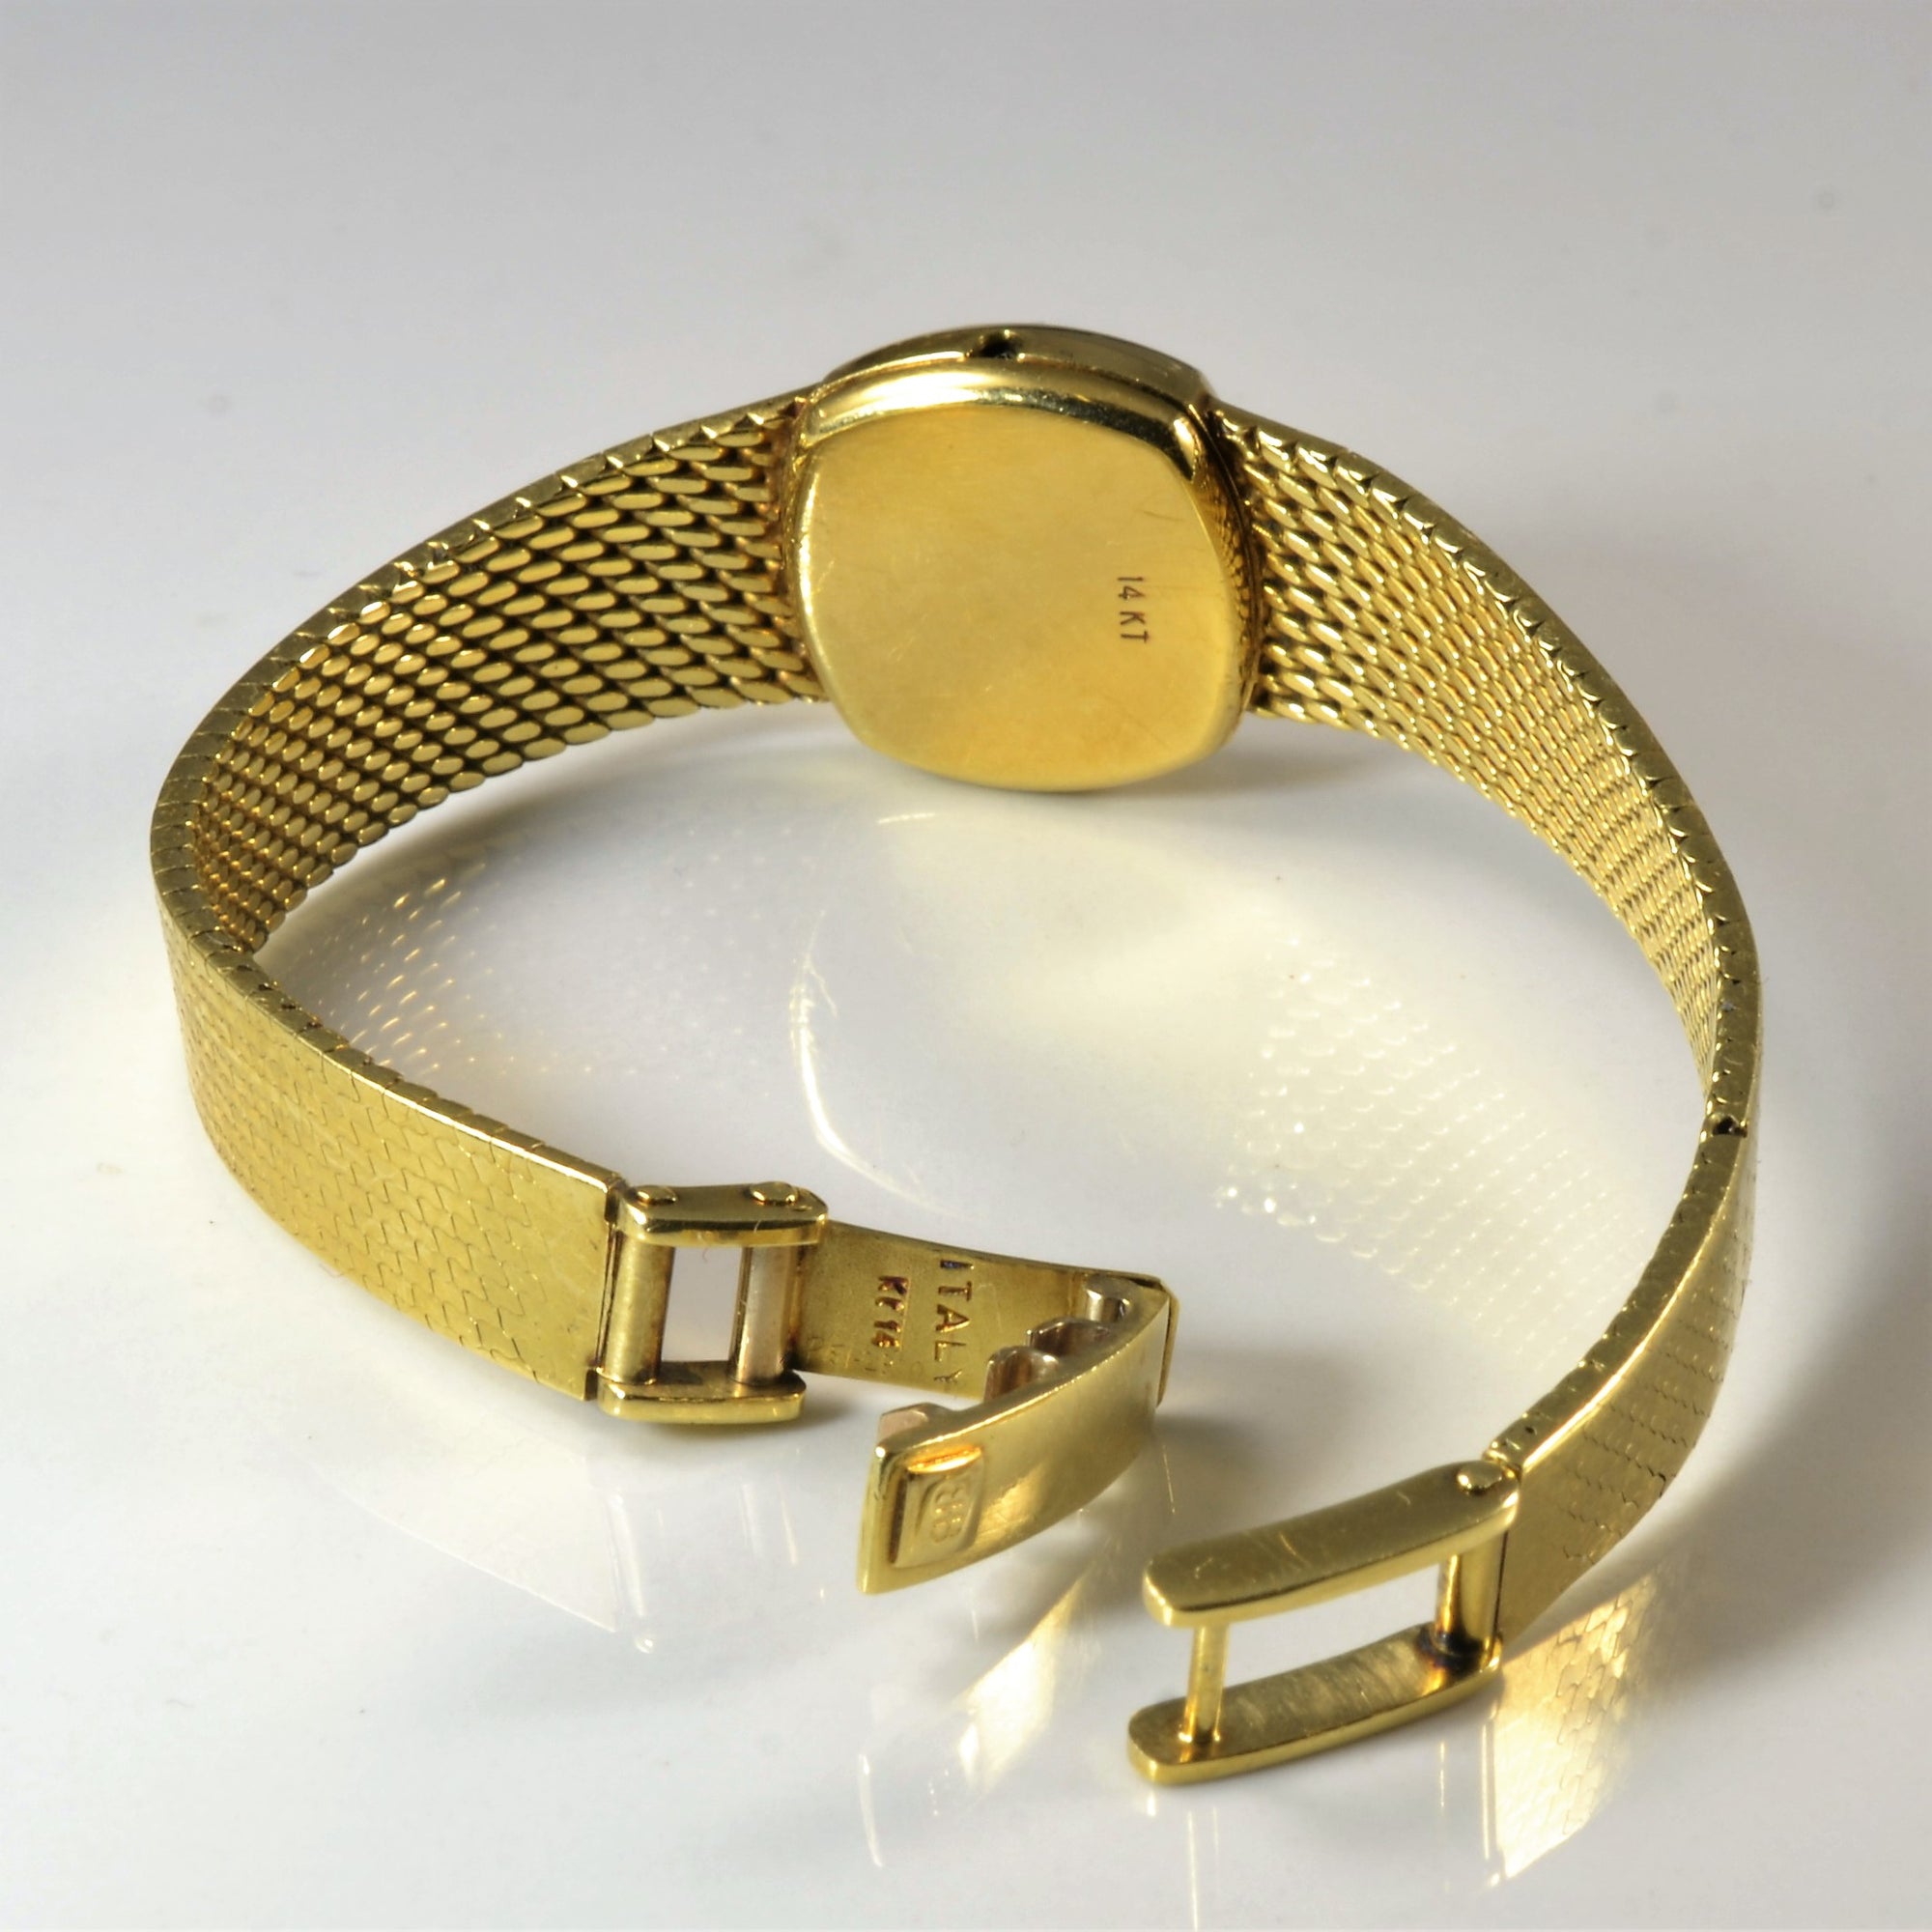 Birks' 14k Gold Watch